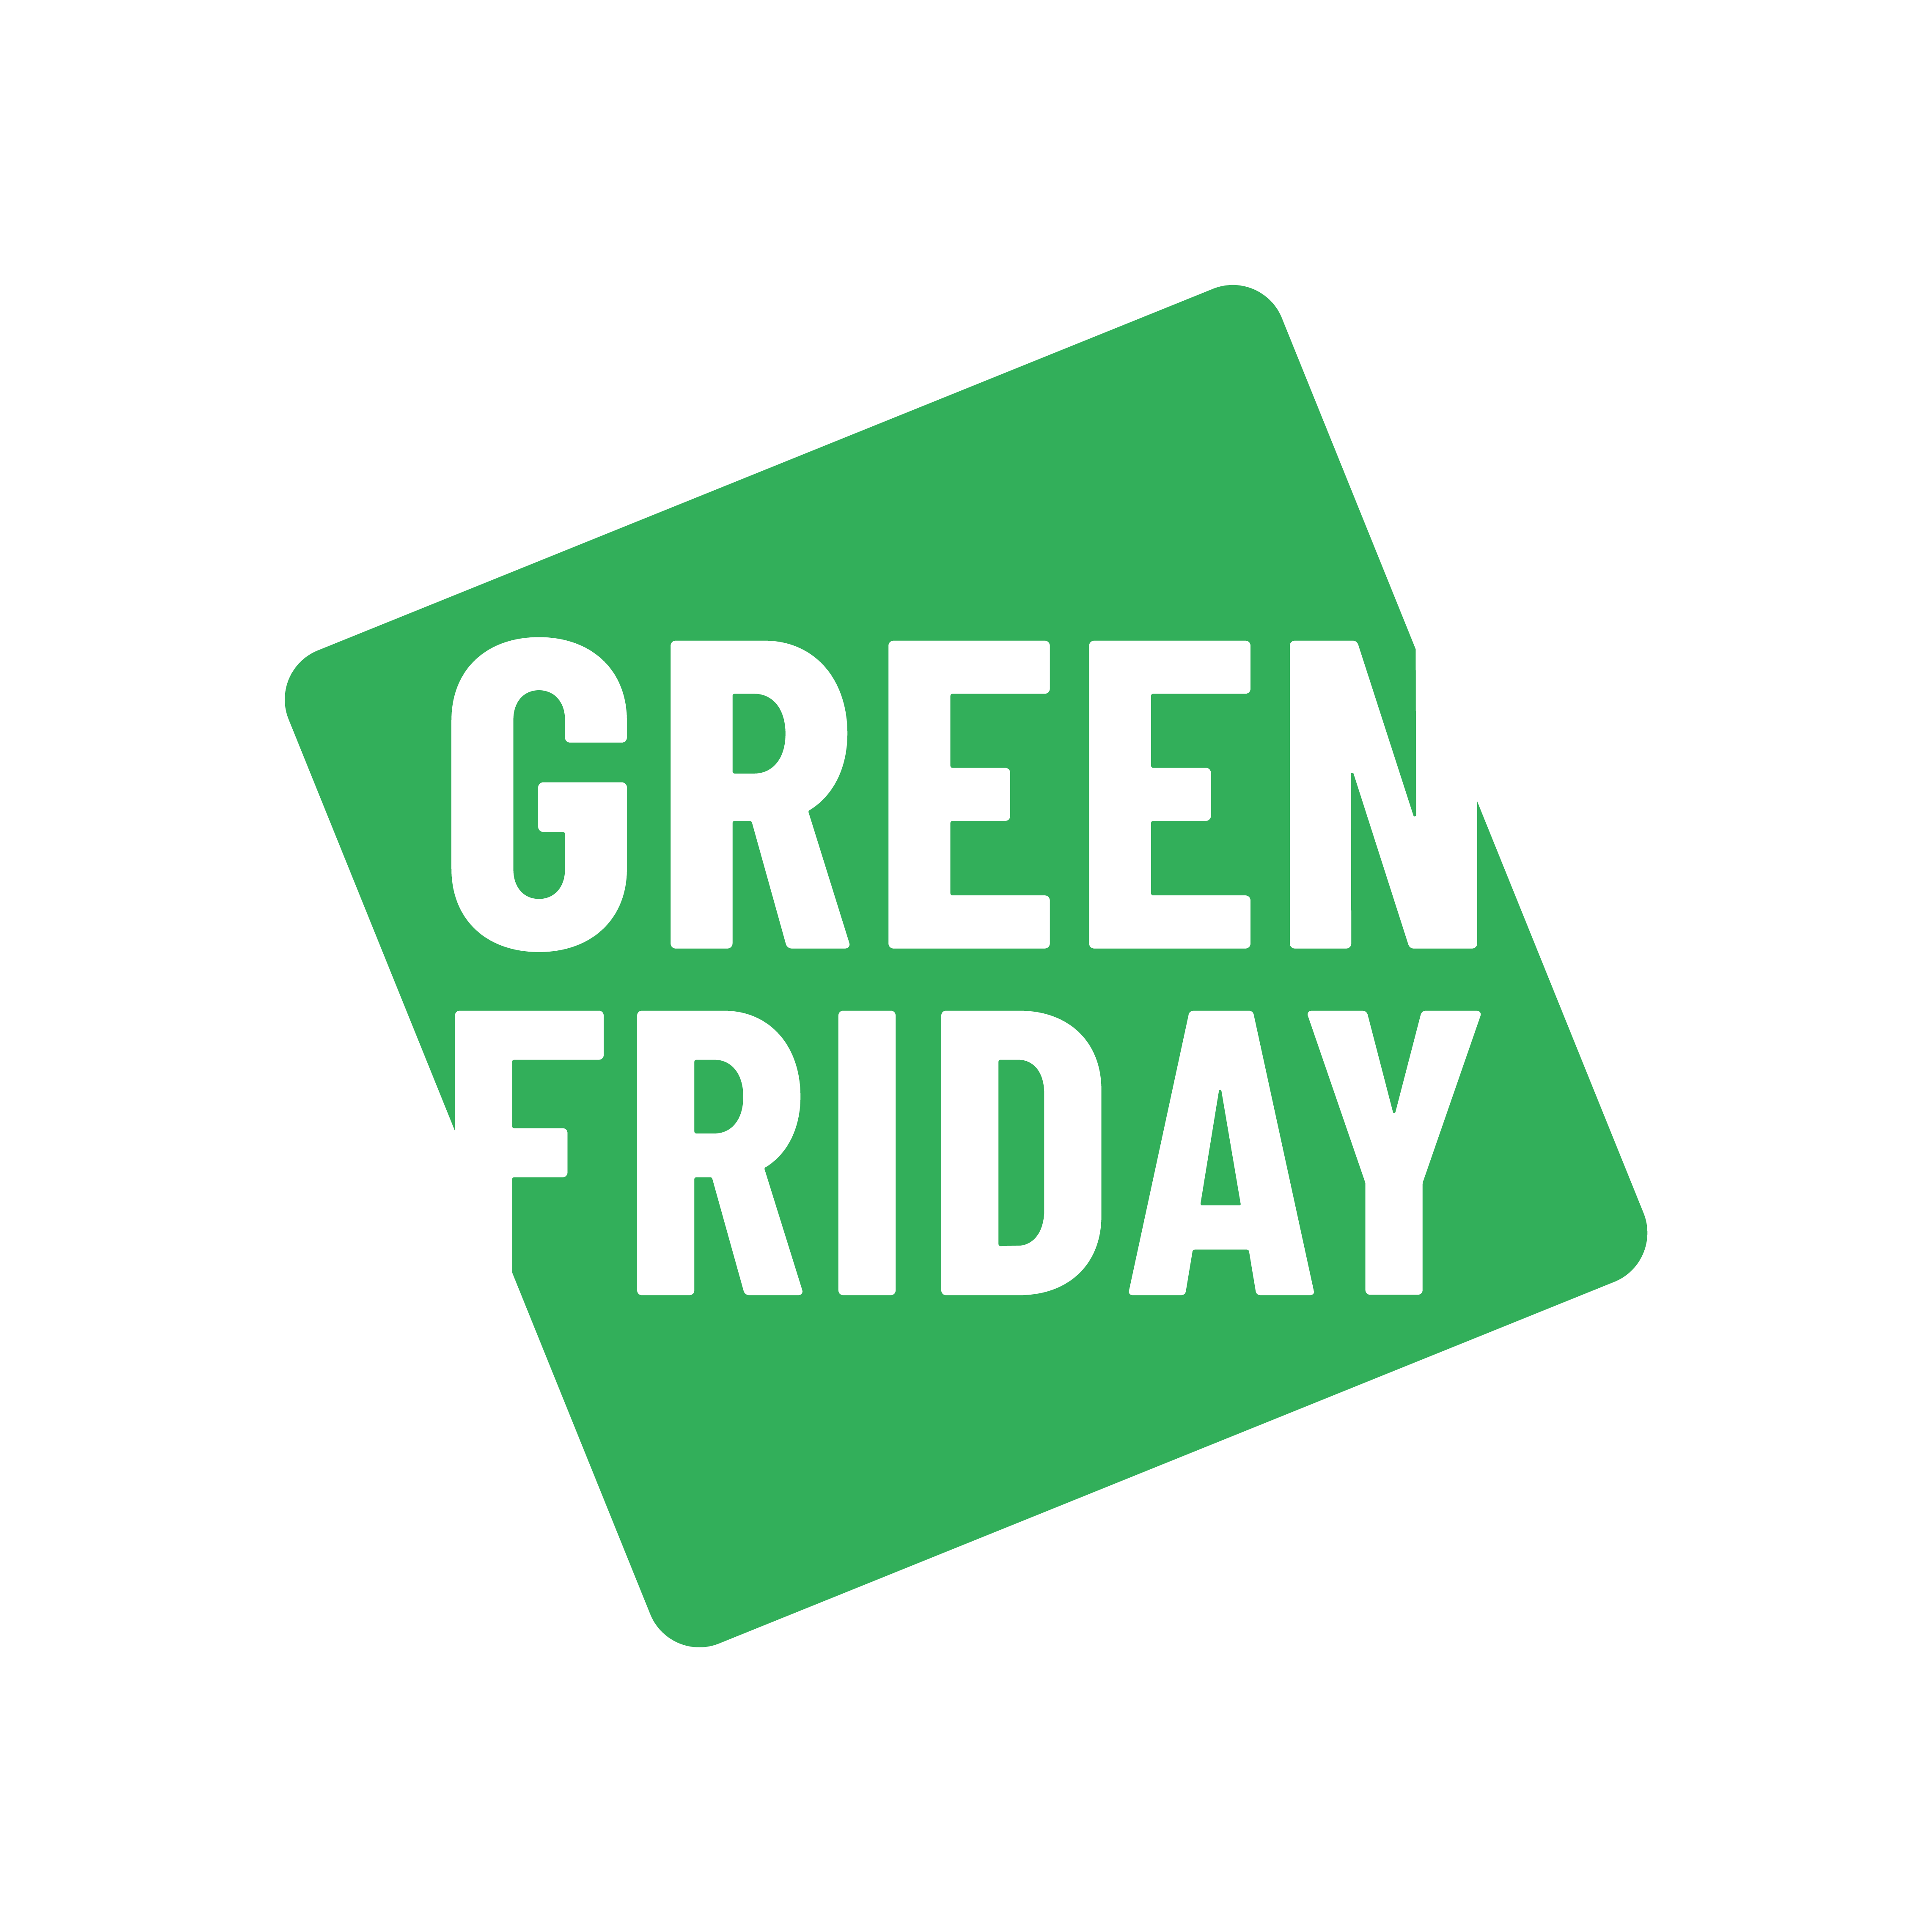 Green Friday Green Friday